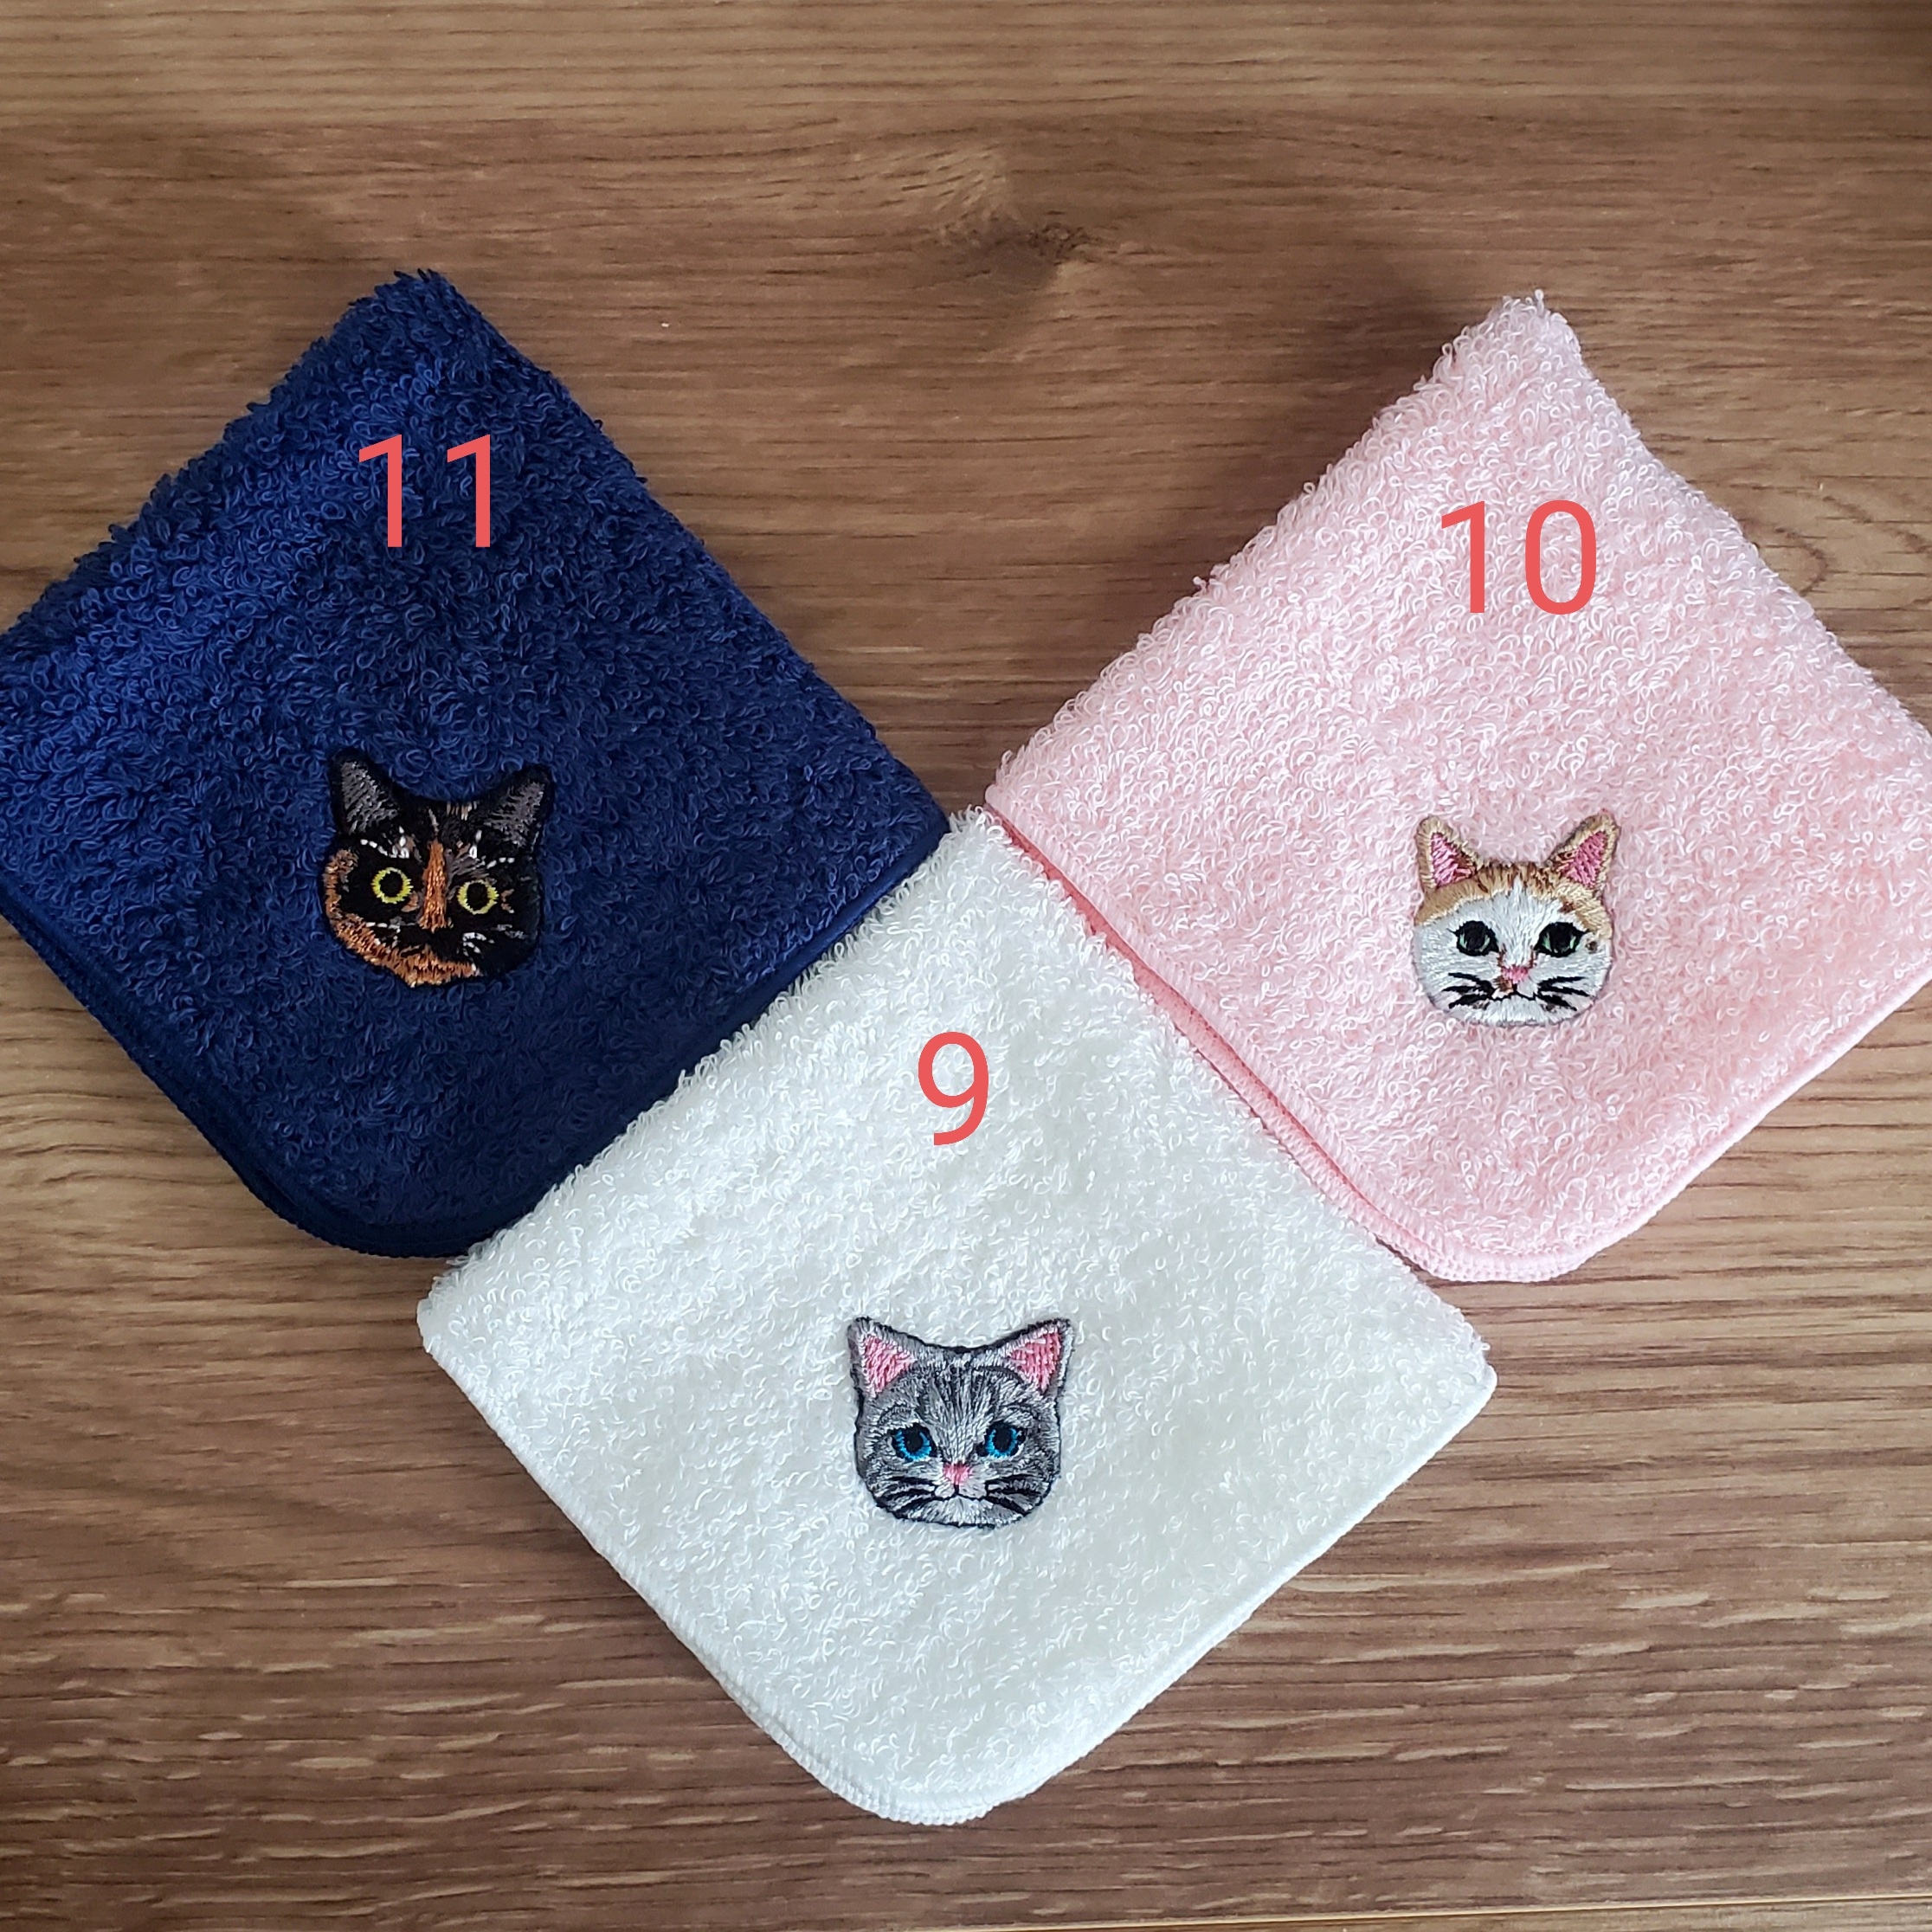 父の日セット 猫さん刺繍のタオルハンカチ2枚組 Iichi ハンドメイド クラフト作品 手仕事品の通販